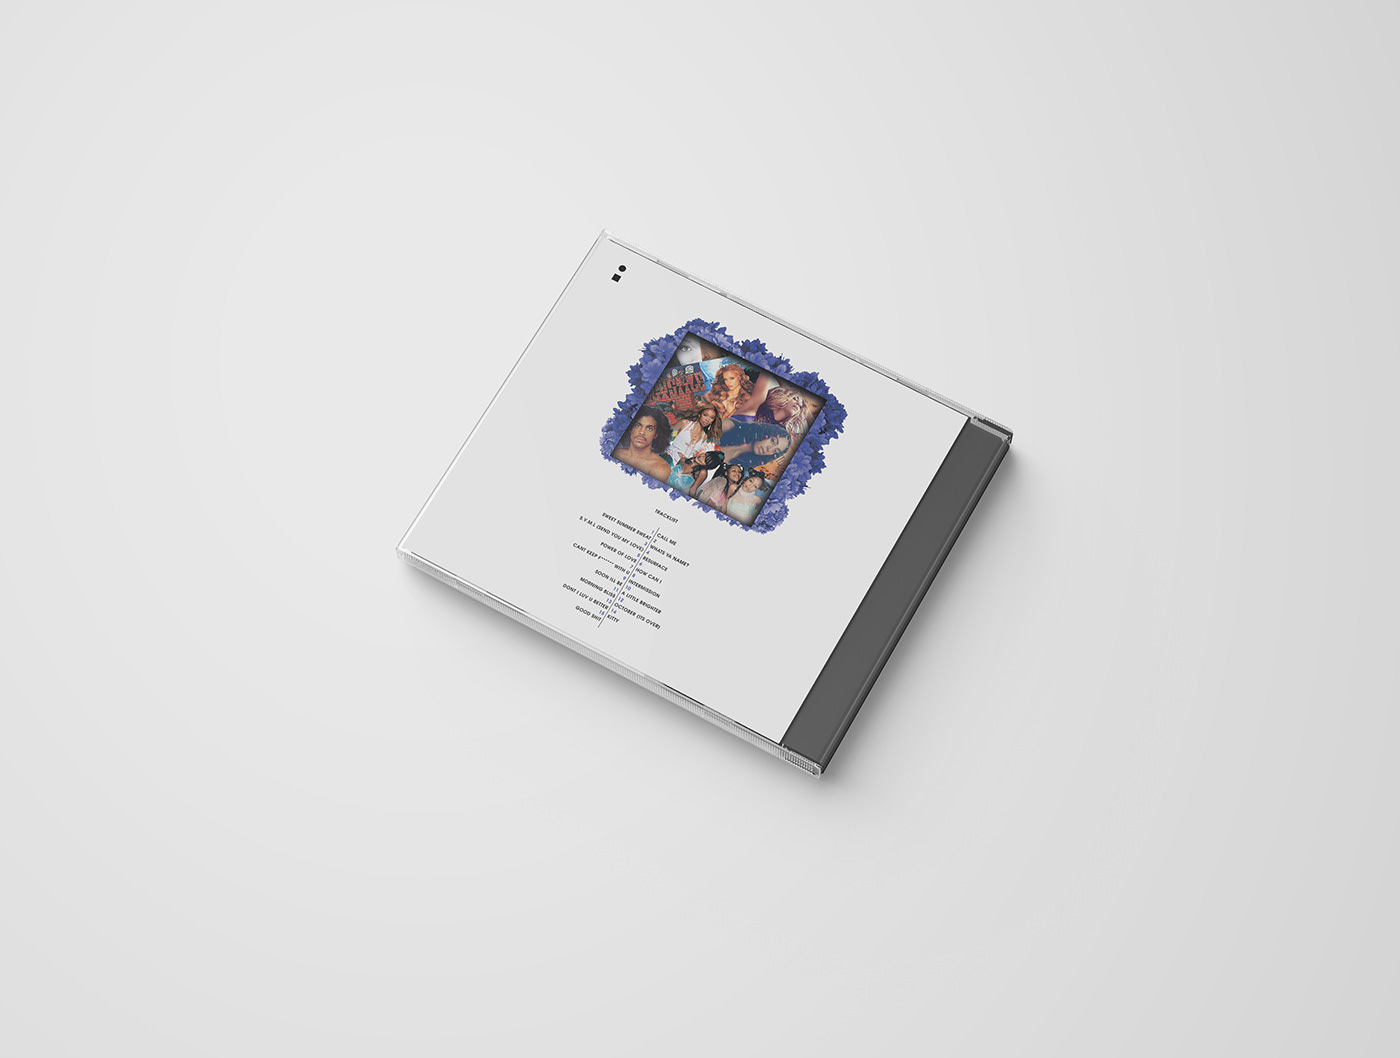 cd album art essay graphic design 